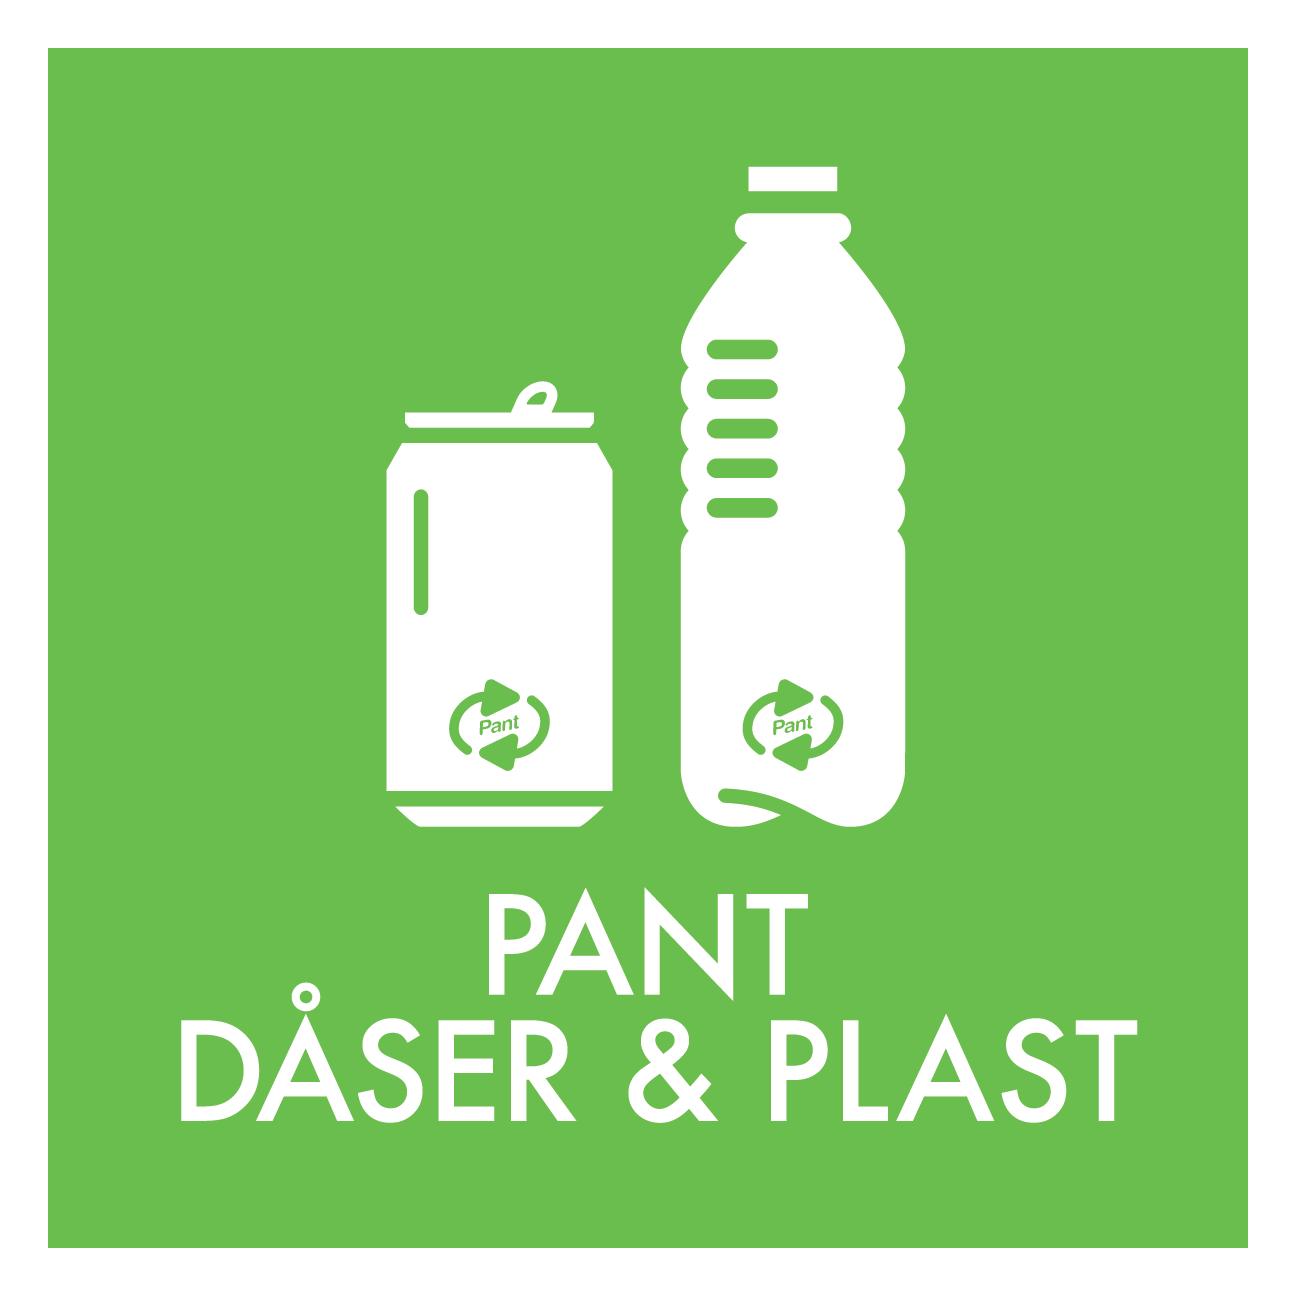 Pant dåser og plast skilt - Dansk Affaldssortering